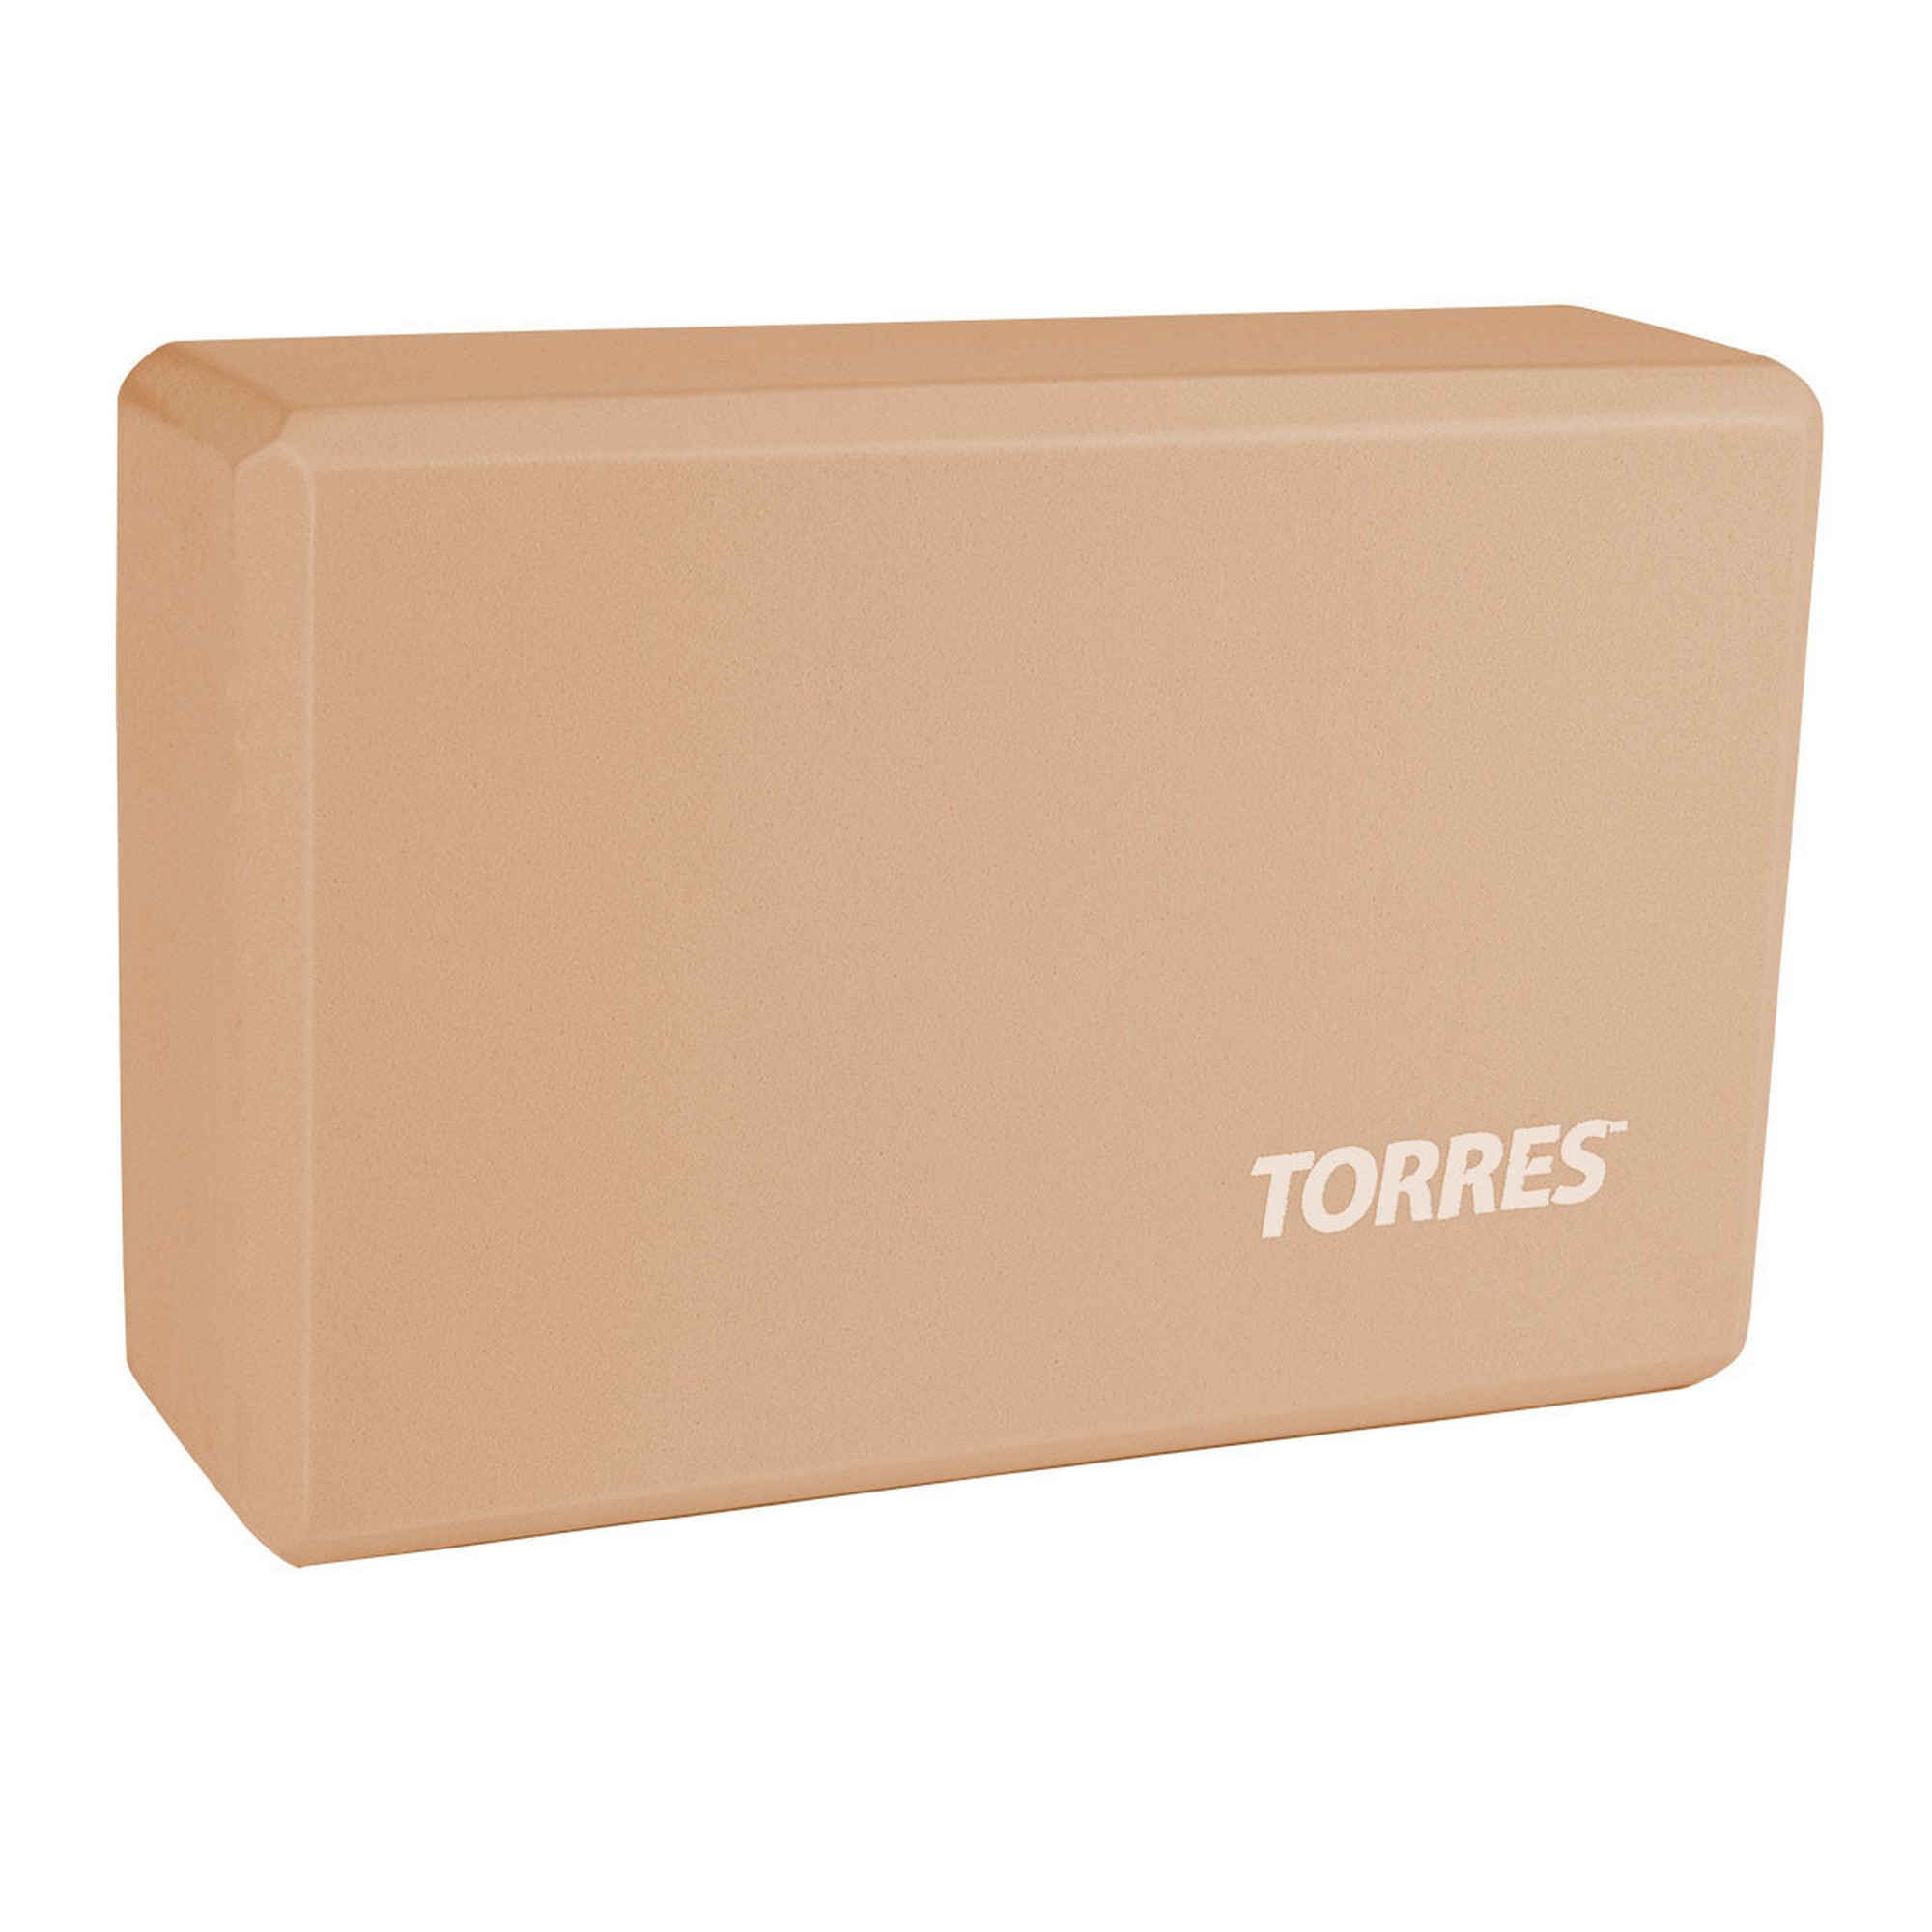    Torres  , 8x15x23  YL8005P 